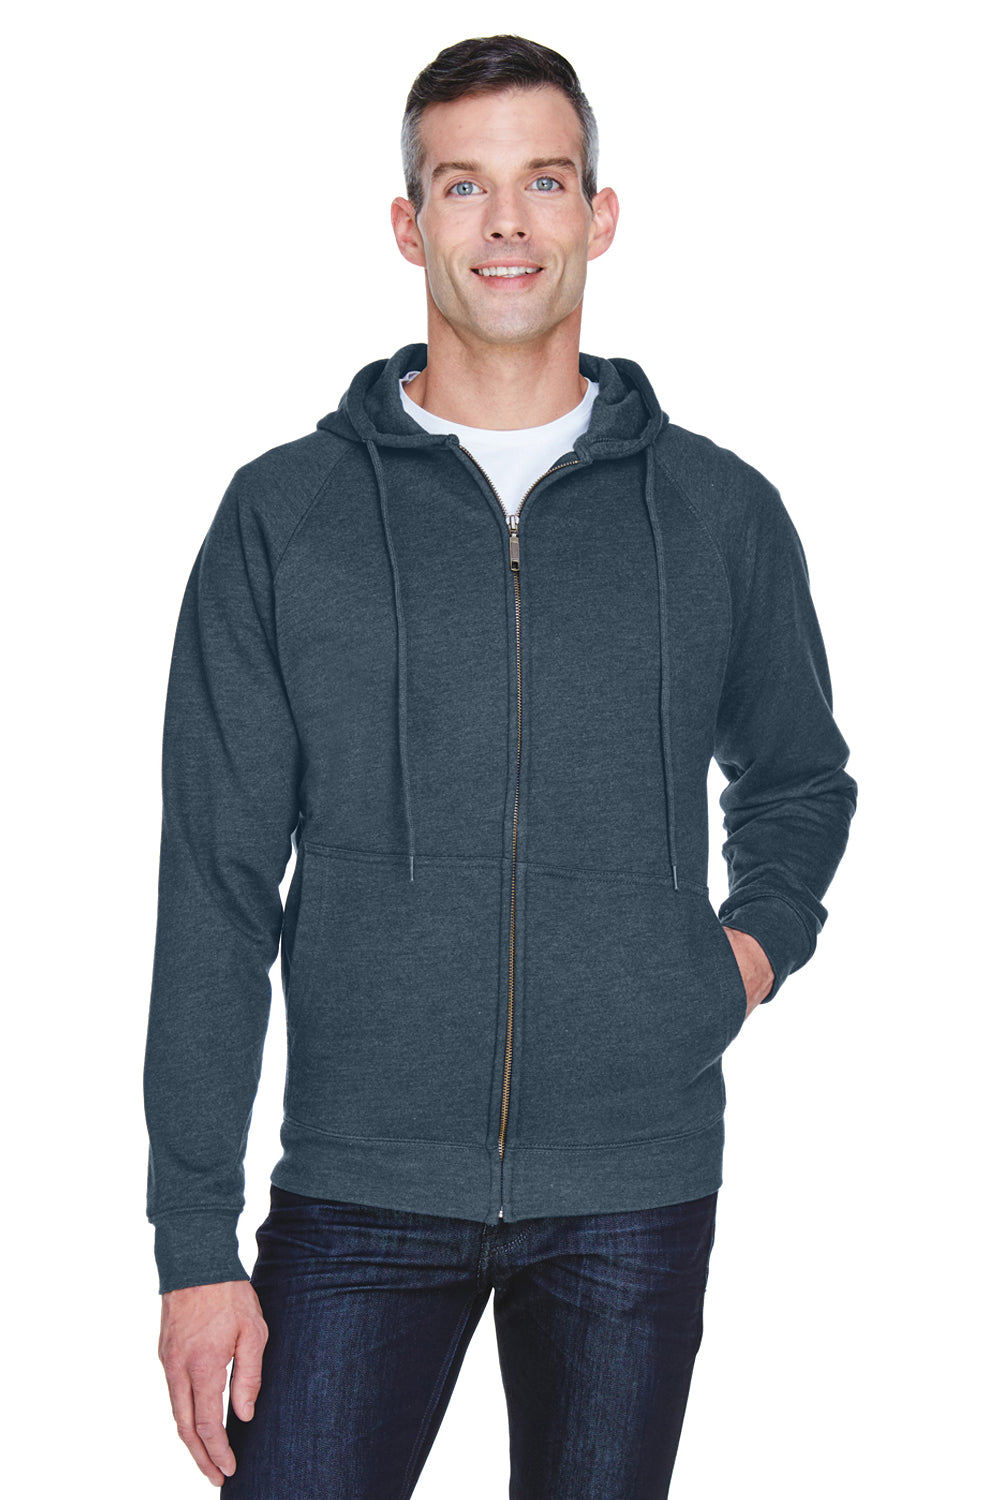 UltraClub 8463 Mens Rugged Wear Water Resistant Fleece Full Zip Hooded Sweatshirt Hoodie Heather Dark Grey Front